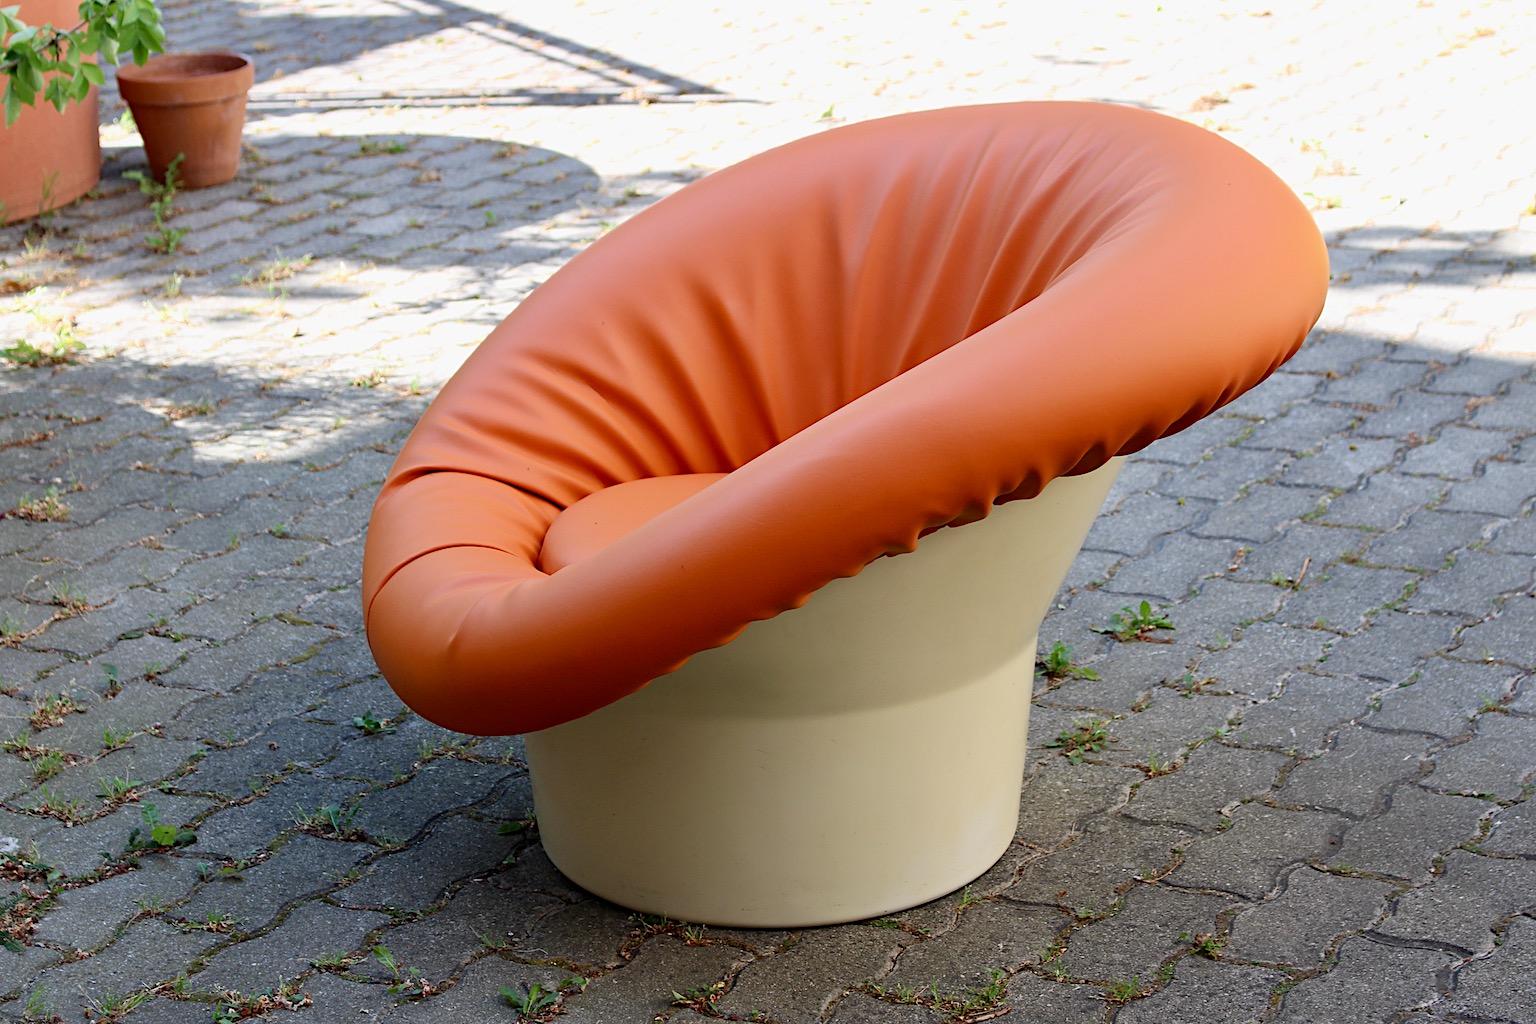 Fauteuil de salon ou fauteuil club de l'ère spatiale en plastique blanc et faux cuir orange conçu et fabriqué en France dans les années 1960.
Le design est très similaire à celui de la chaise champignon de Pierre Paulin et provient de la même